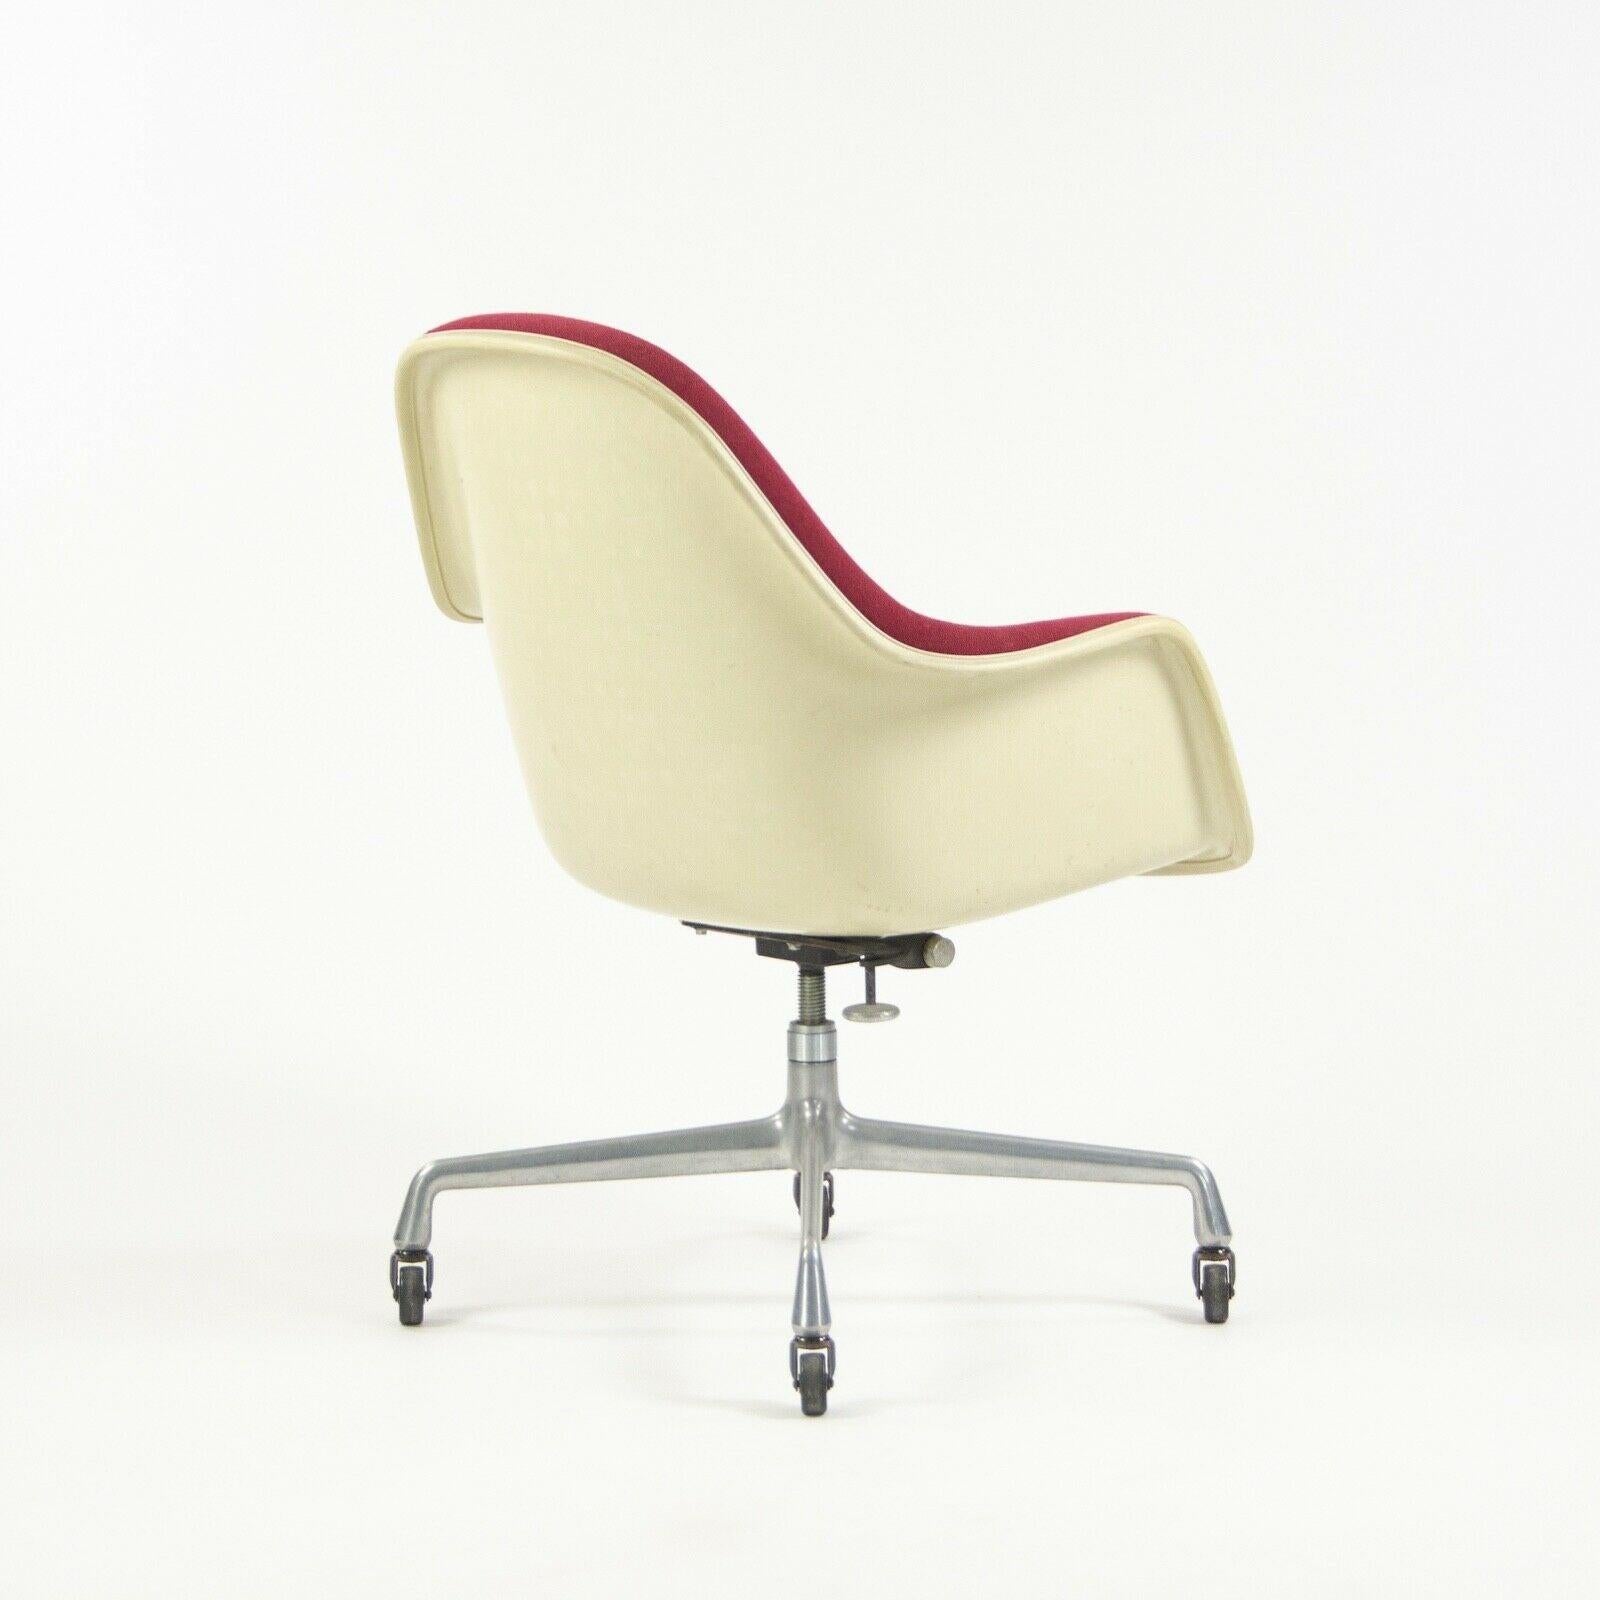 American 1977 Eames Herman Miller EC175 Upholstered Fiberglass Shell Chair For Sale